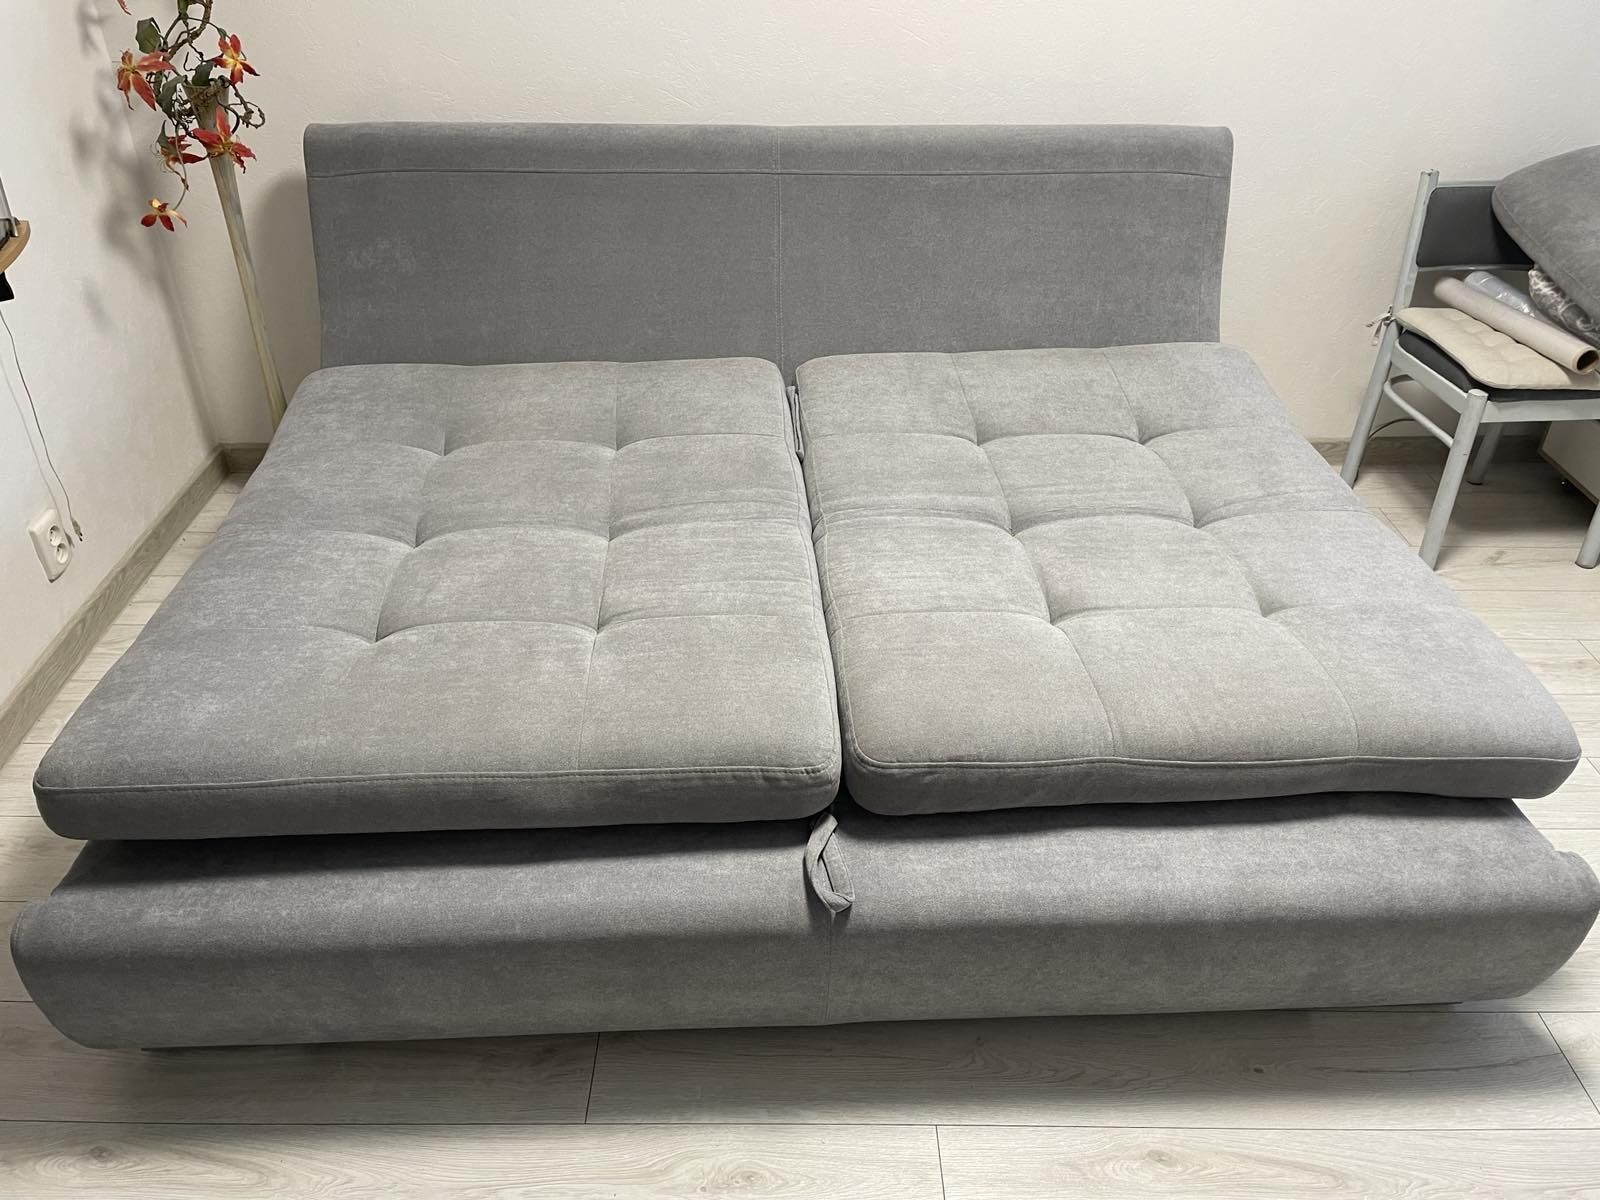 Продам диван серого цвета